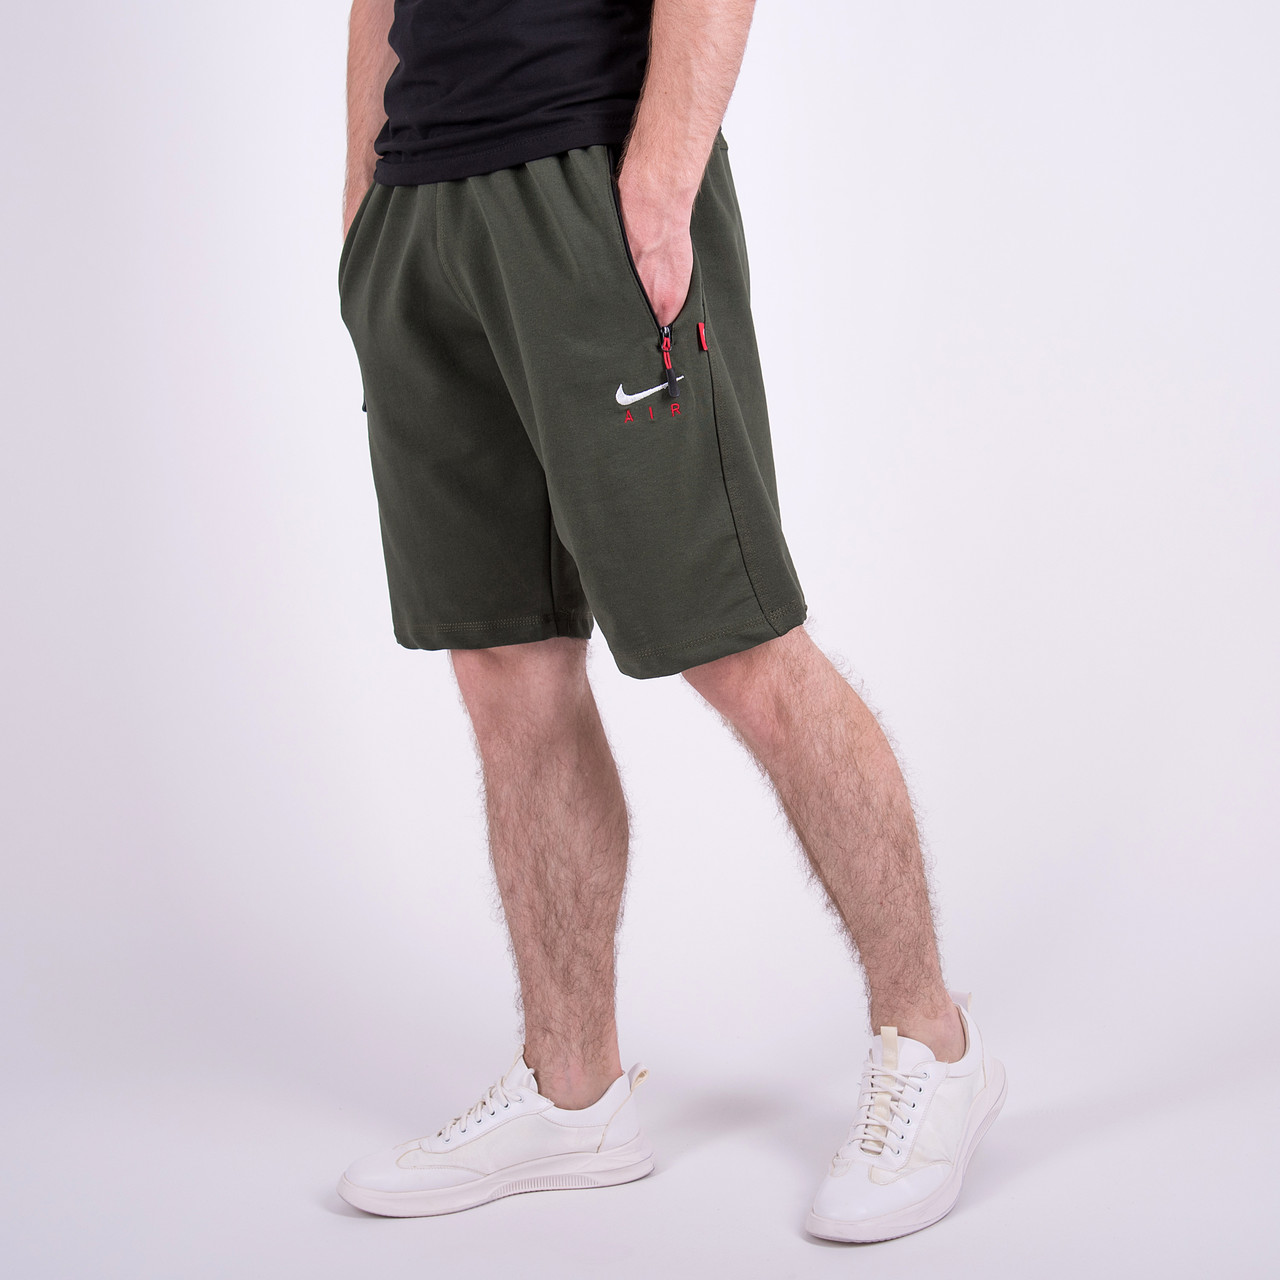 Чоловічі трикотажні шорти Nike, кольору хакі. Батал